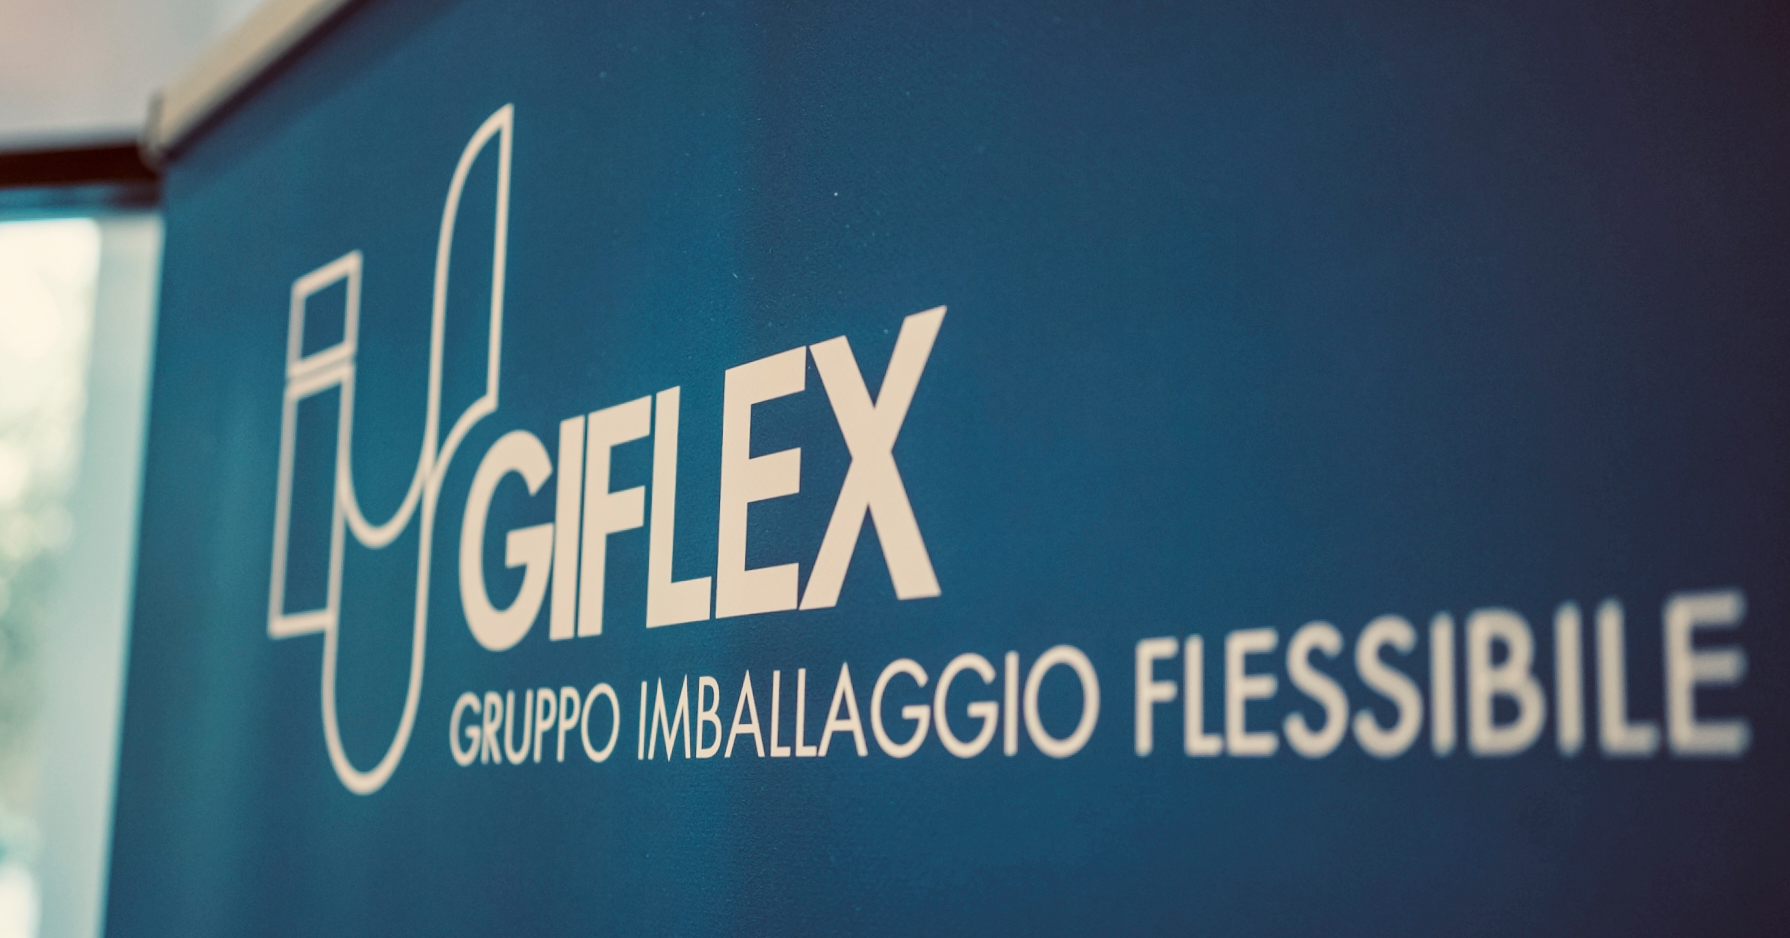 Verso il congresso Giflex 2023